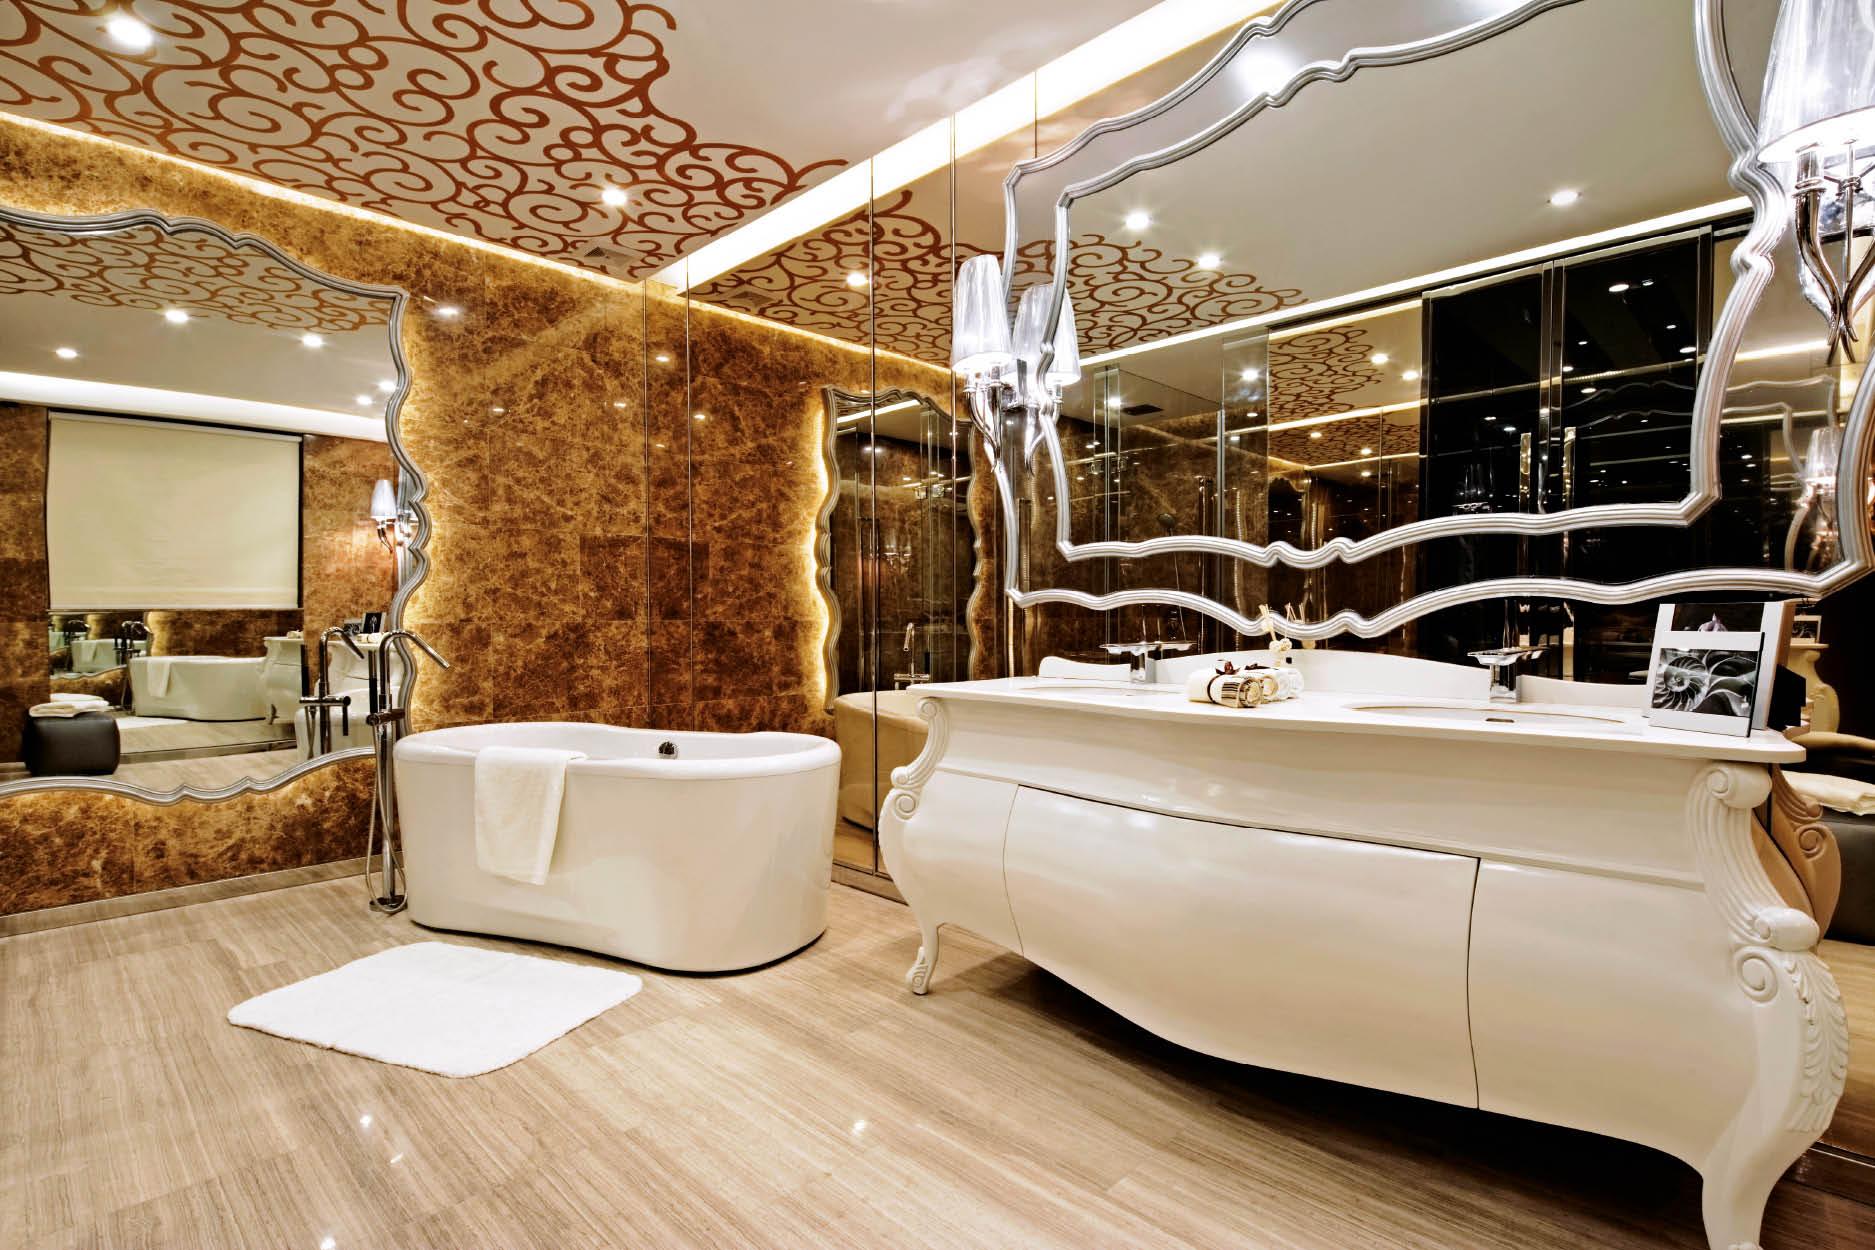 Step Inside a Luxurious Jiangsu Province Residence